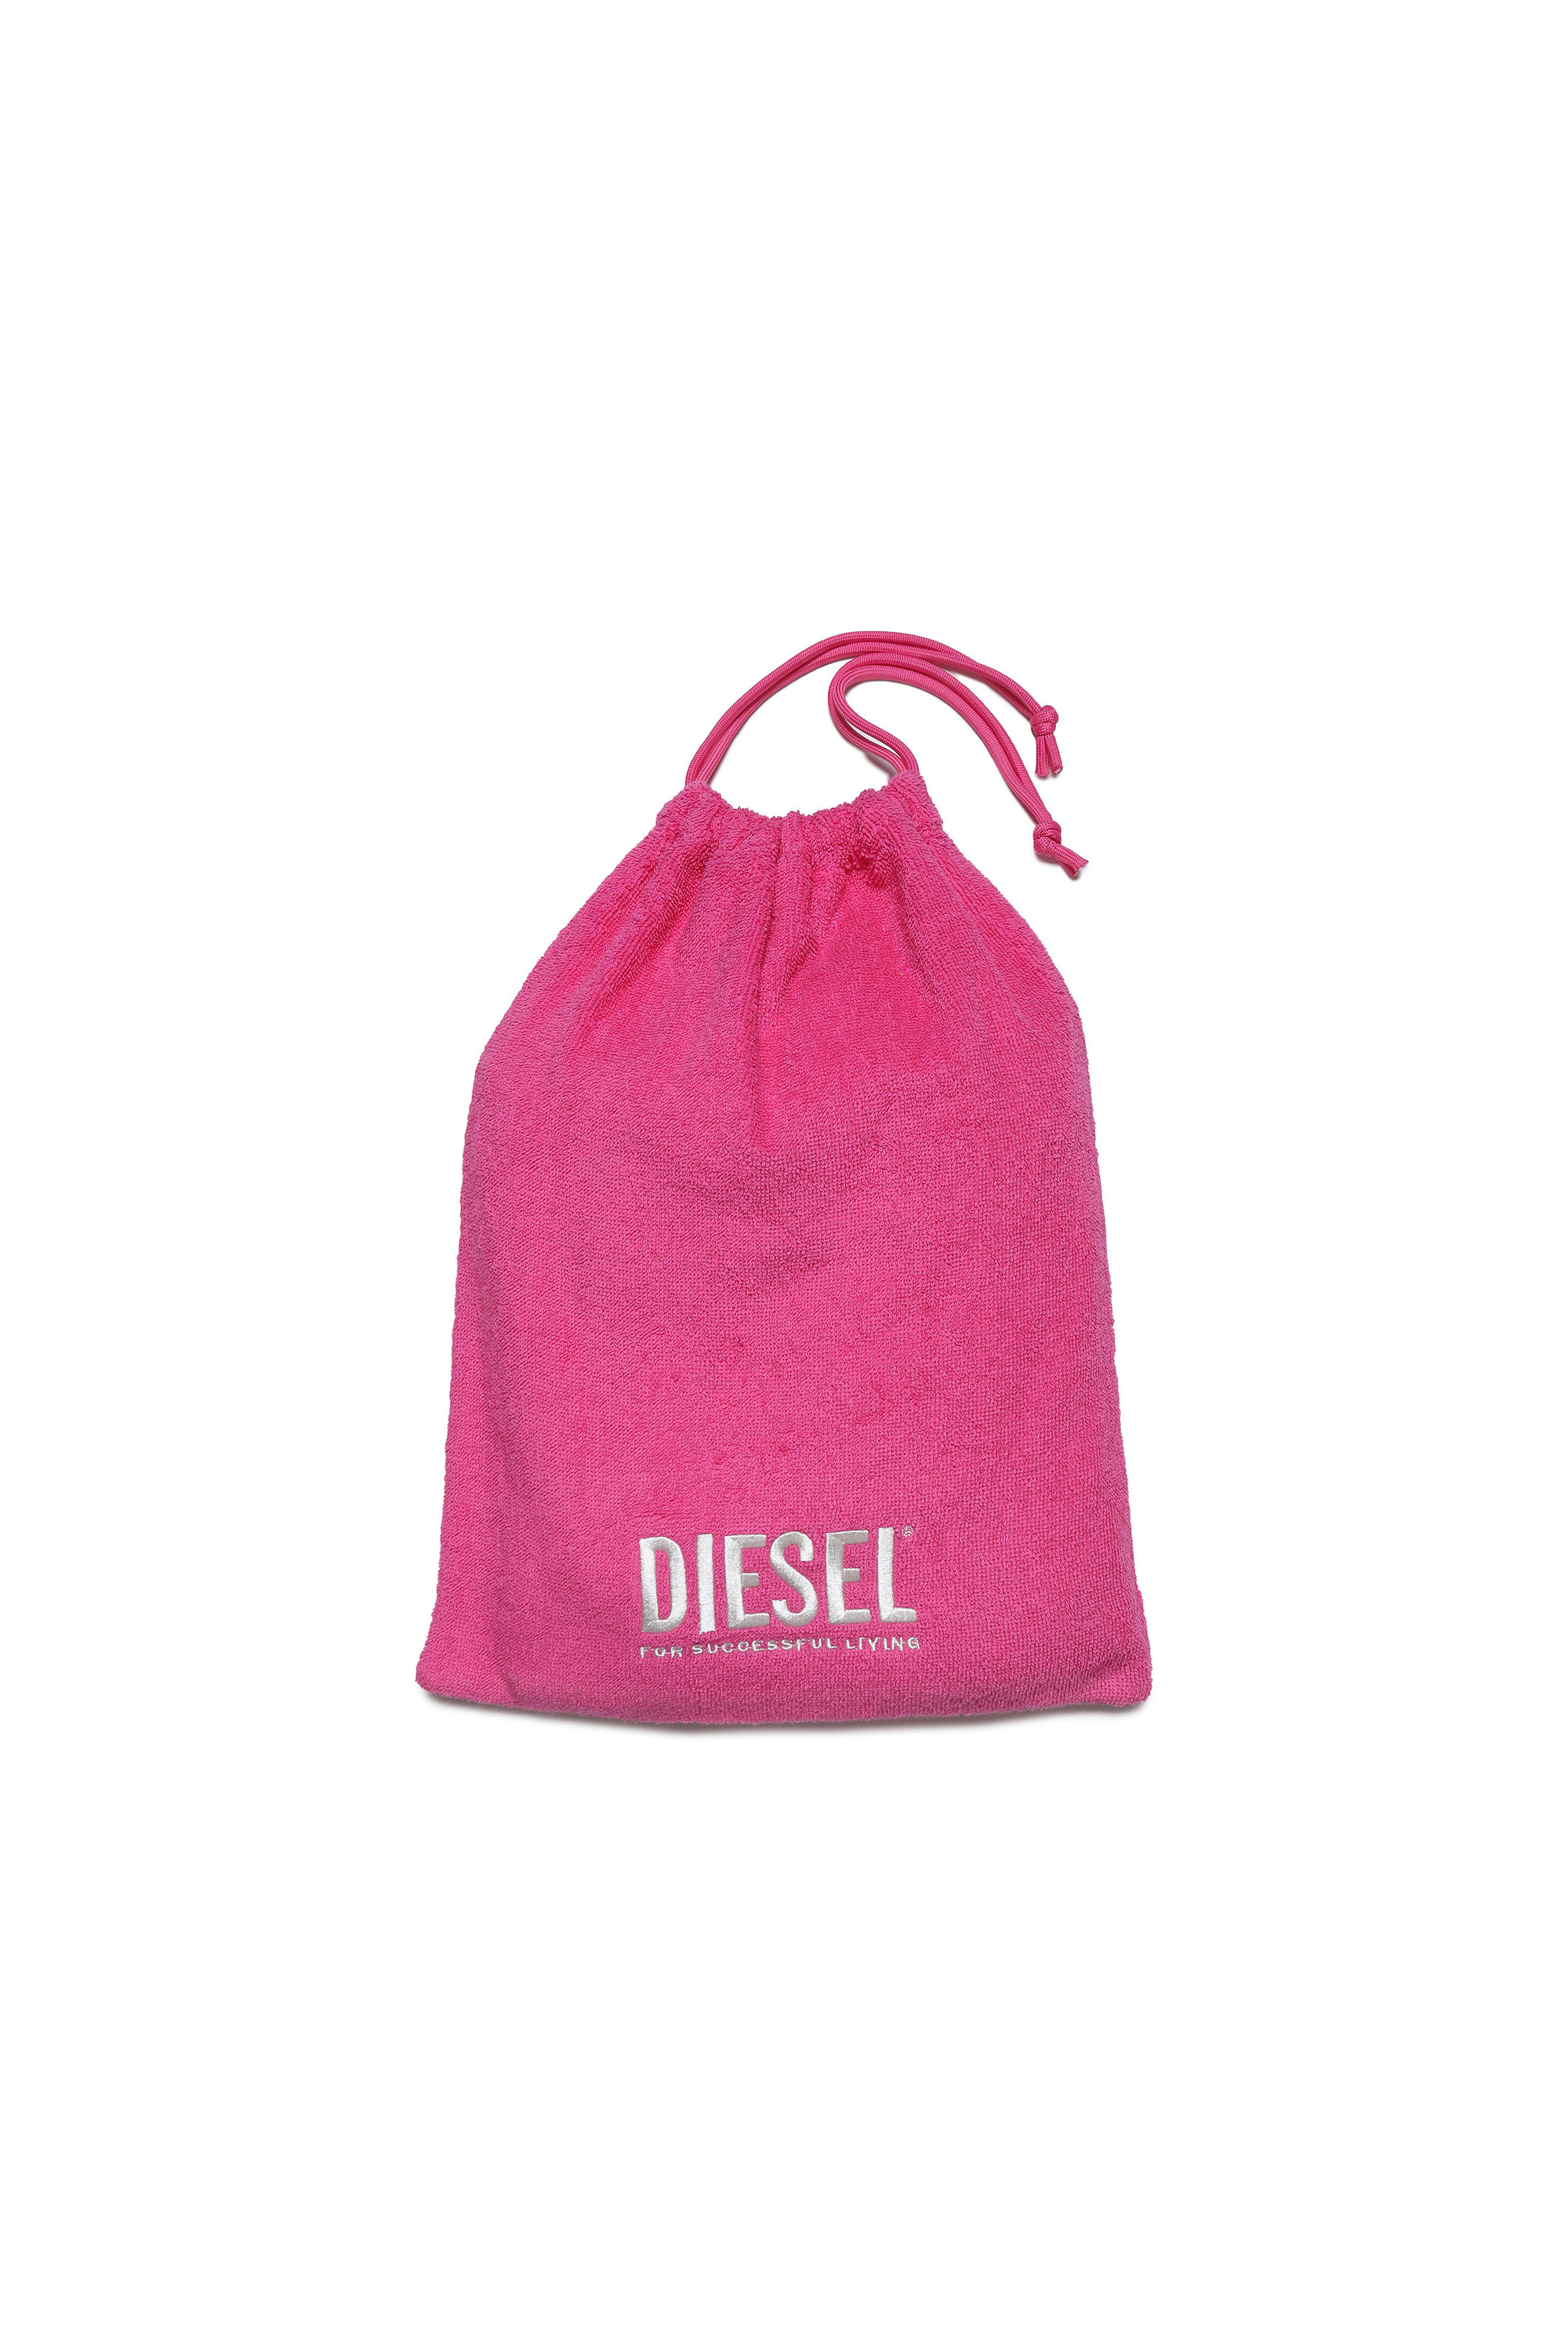 Diesel - MANDRYB, Pink - Image 3